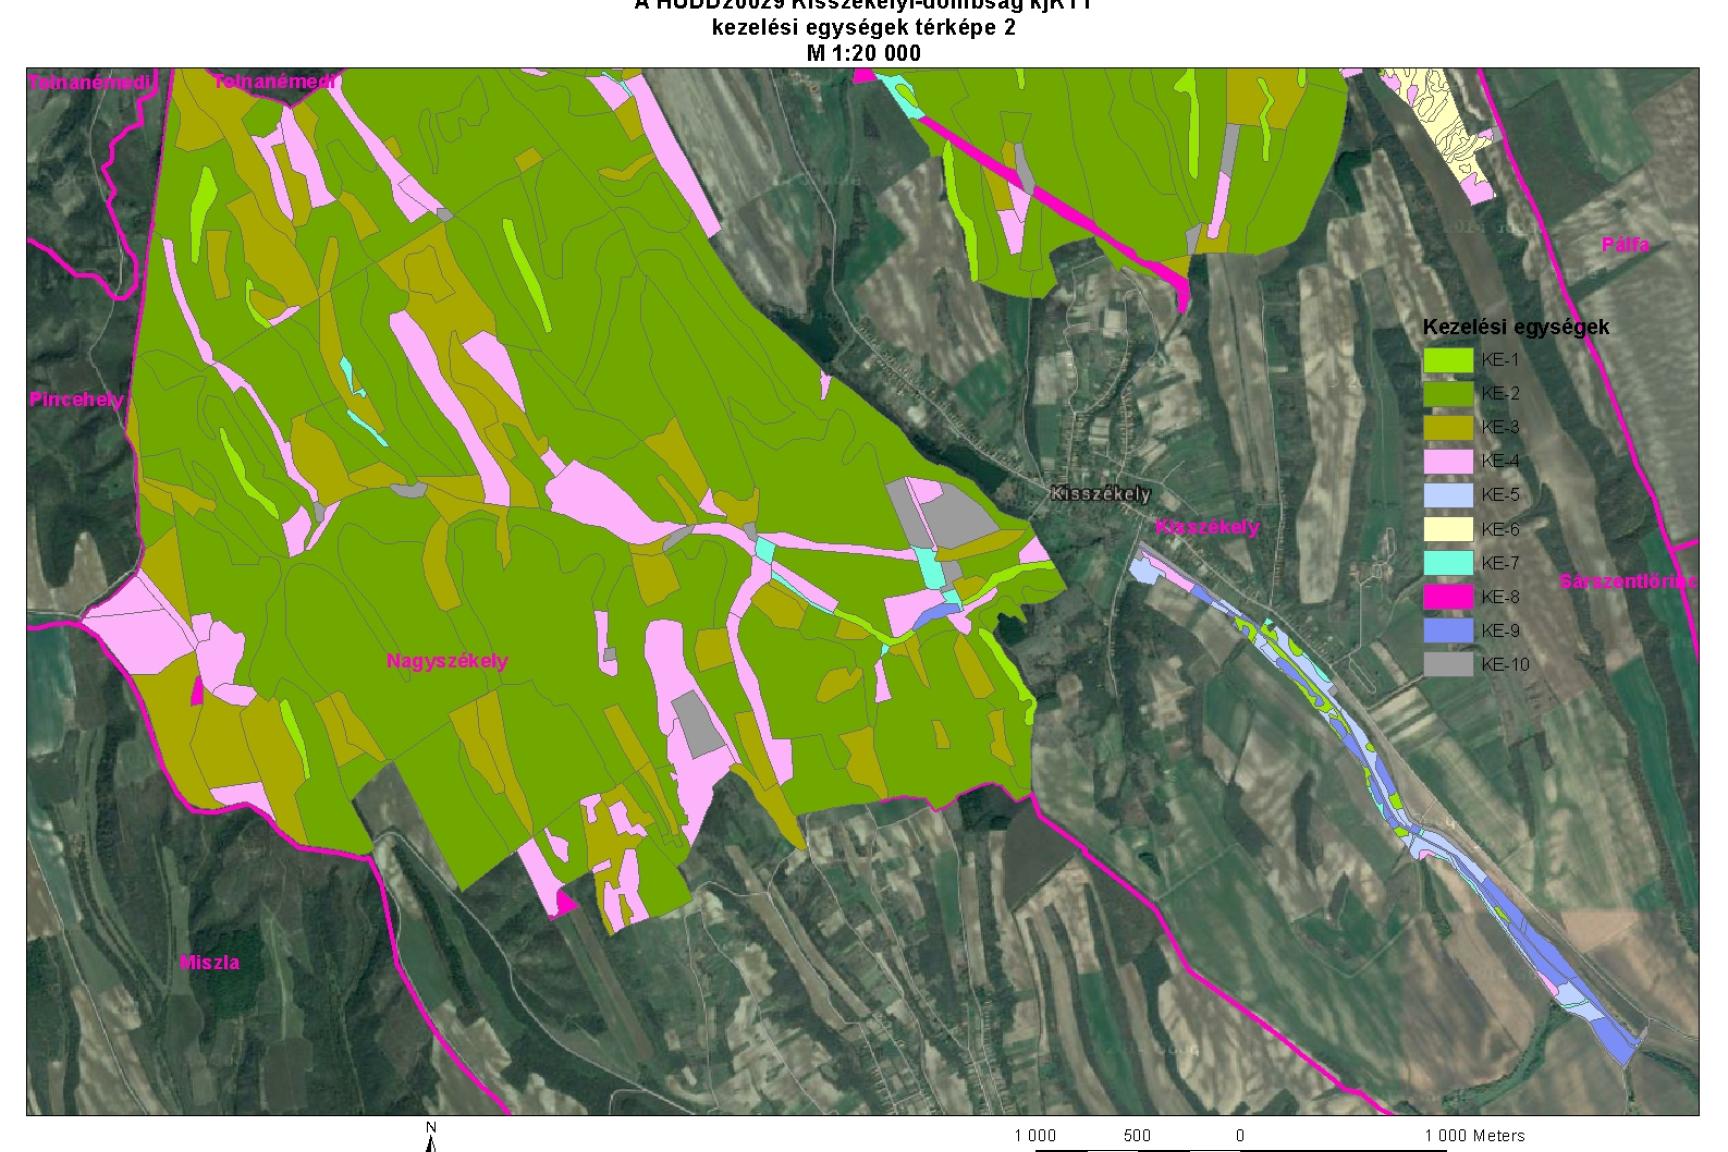 2. ábra: A HUDD20029 Kisszékelyi-dombság kjTT kezelési egységek térképe 2